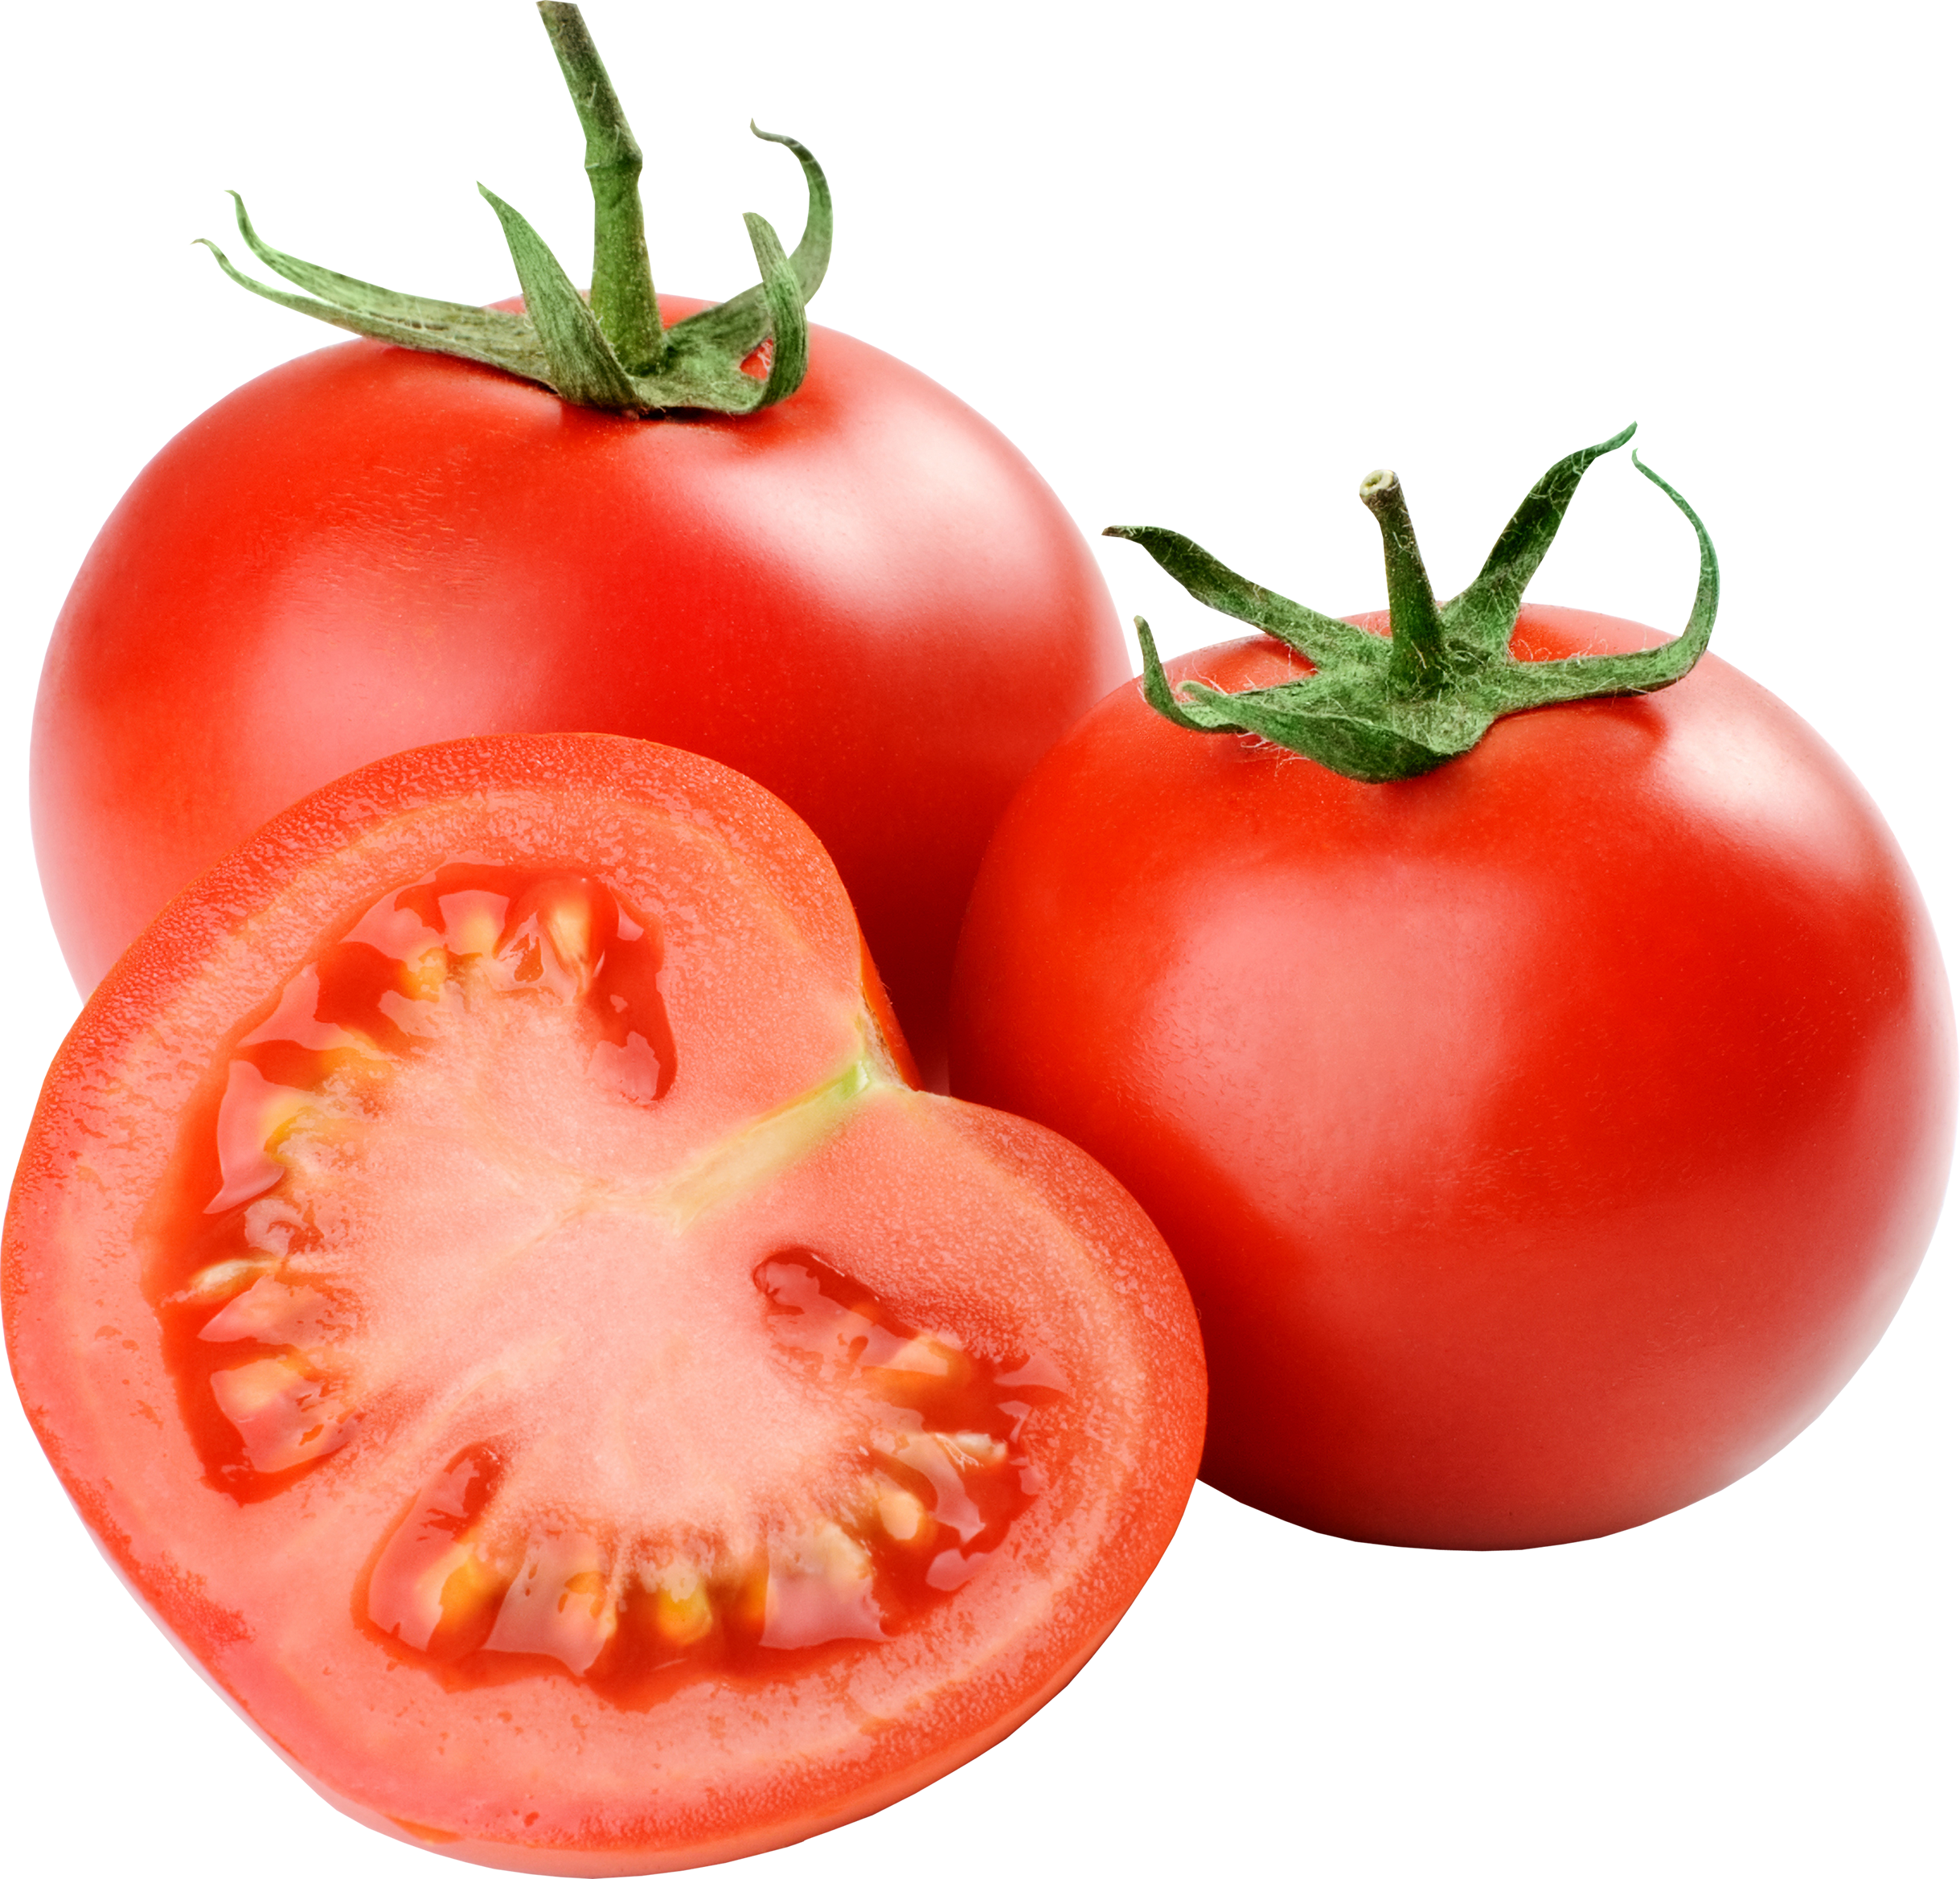 Tomato #13